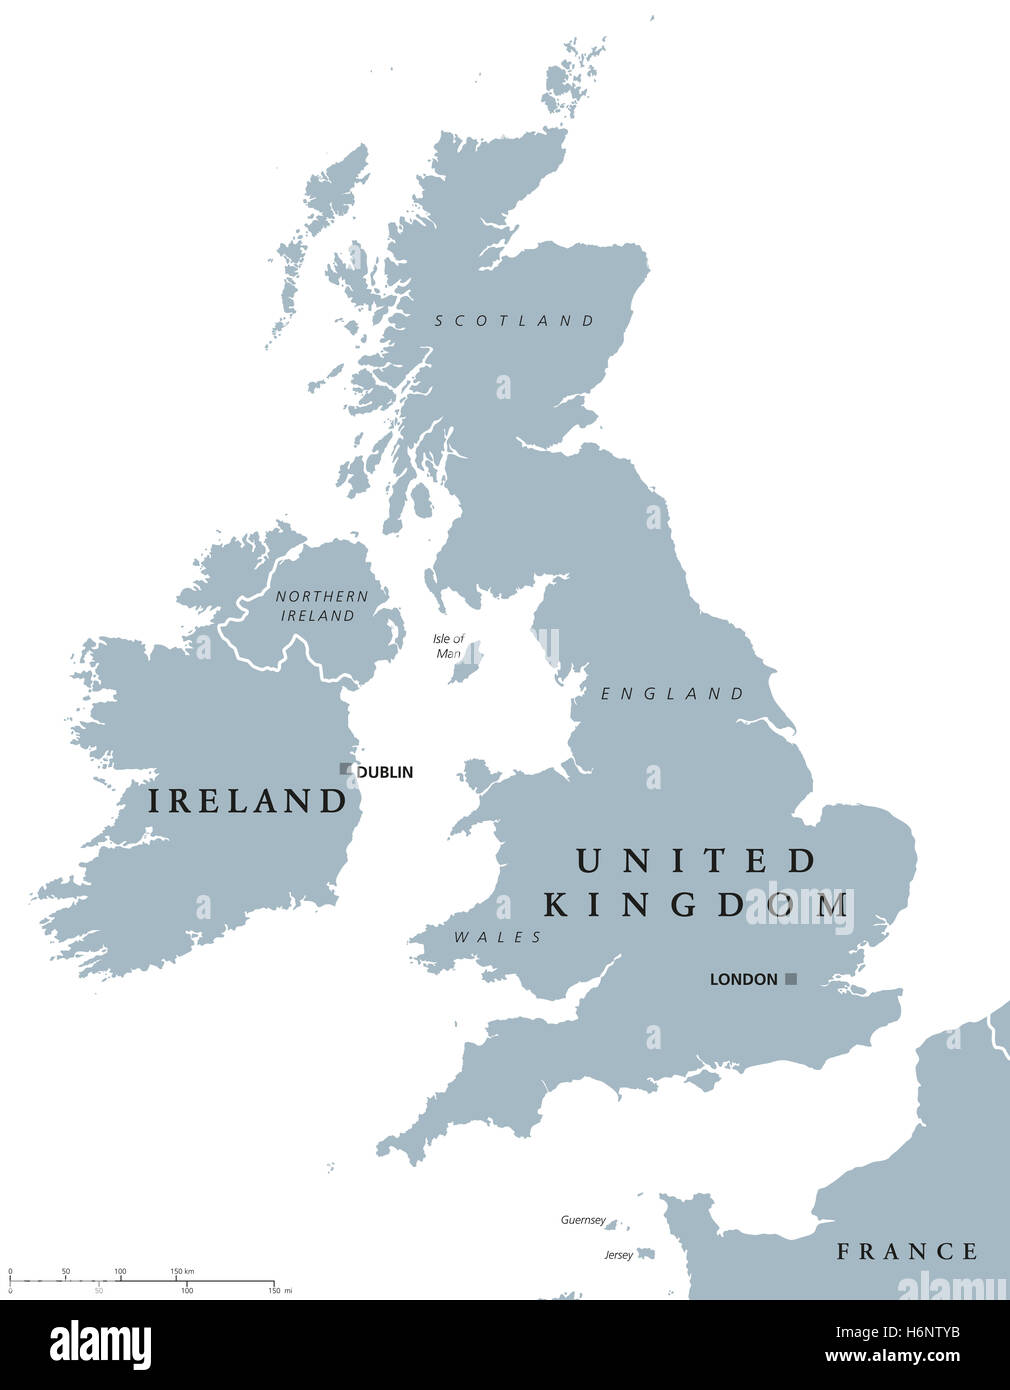 L'Irlande et Royaume-Uni carte politique avec les capitales Dublin et Londres et avec les frontières nationales. Gris illustration. Banque D'Images